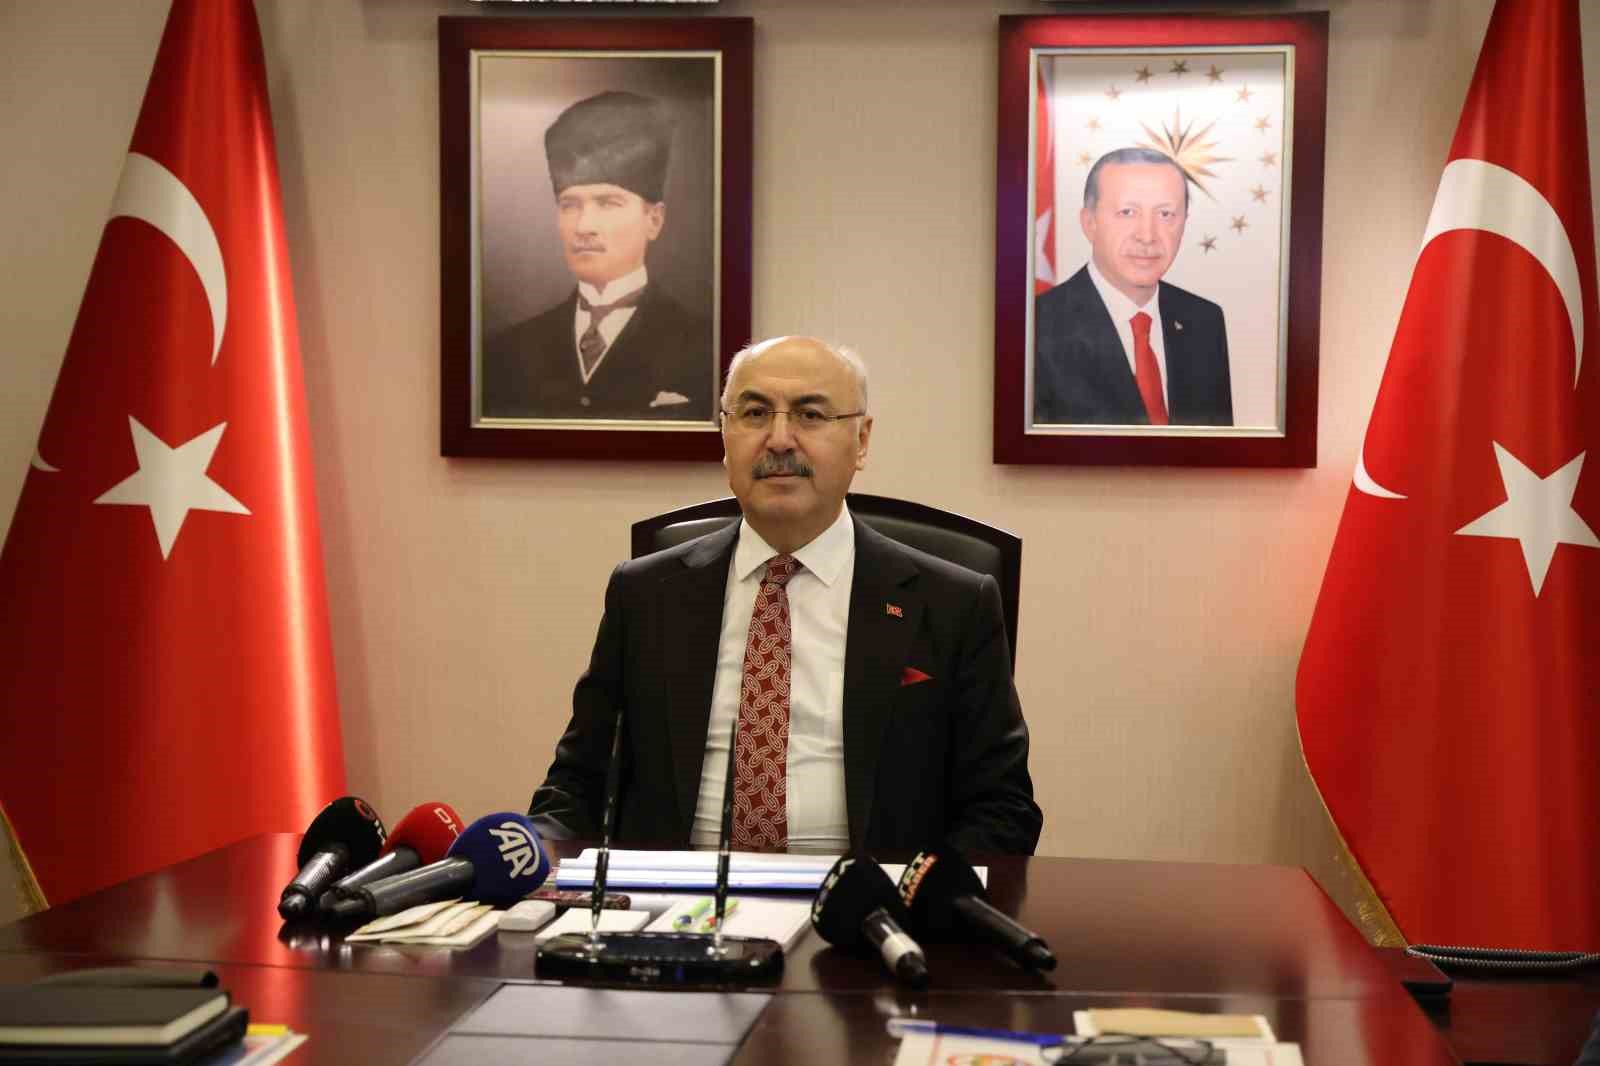 Adana Valisi Köşger: "Suç örgütlerinin üzerine en şiddetli şekilde gideceğiz"